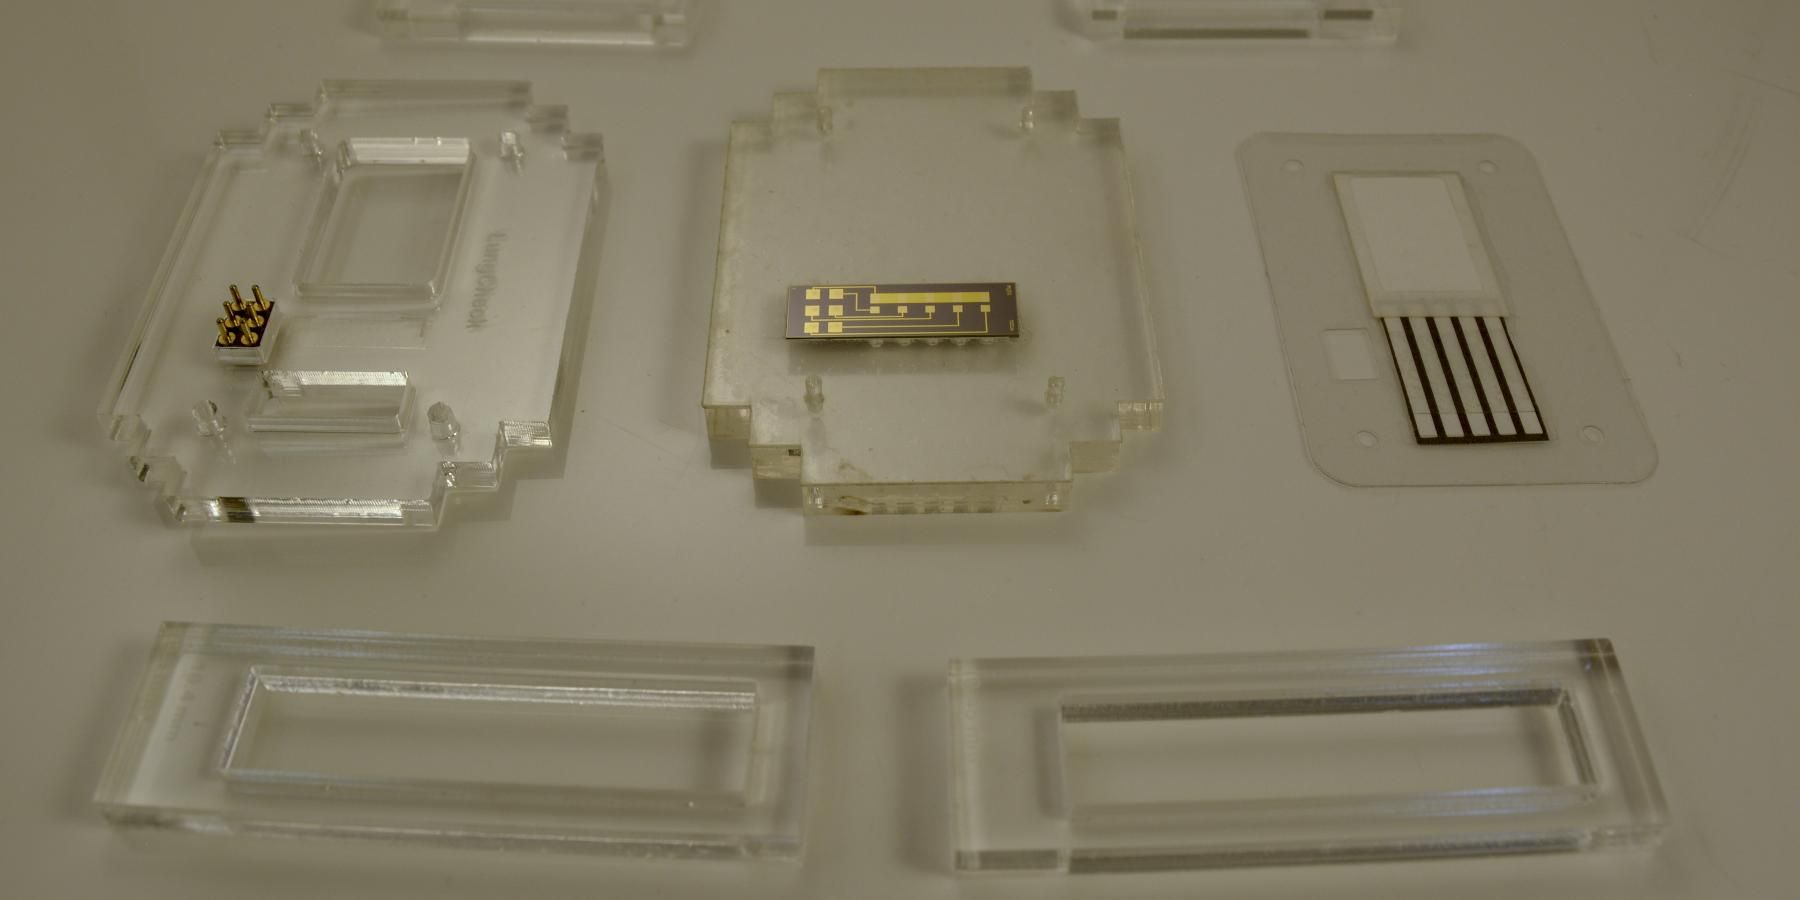 Montaje de la carcasa de metacrilato del dispositivo para la detección de enfermedades pulmonares con un chip integrado